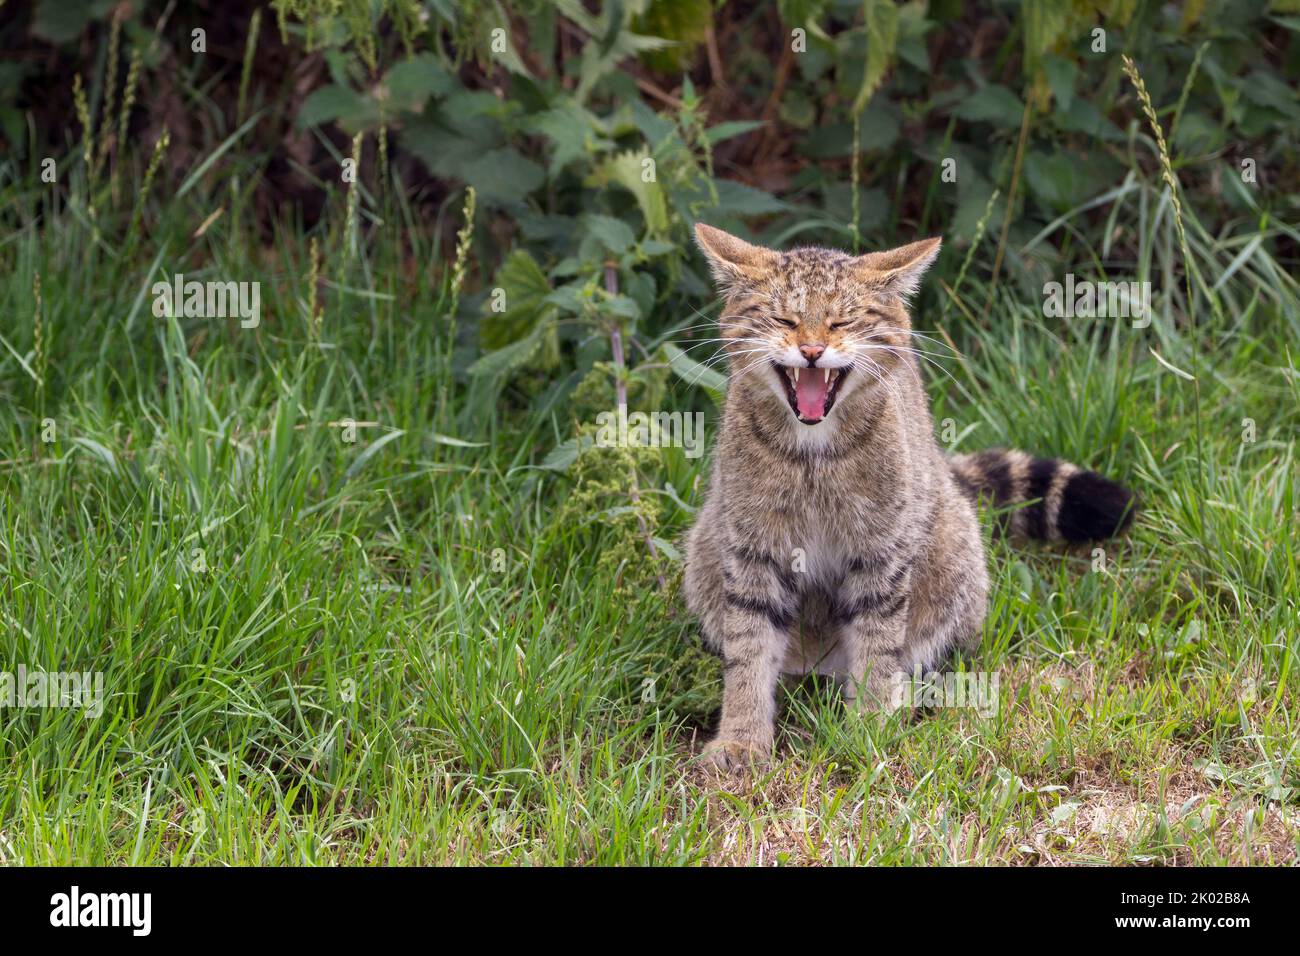 Programme d'élevage en captivité de chats sauvages écossais (Felis silvestris). Grand tabby sauvage chat bushy queue émoussée anneaux noirs et pointe rayures foncées sur la fourrure Banque D'Images